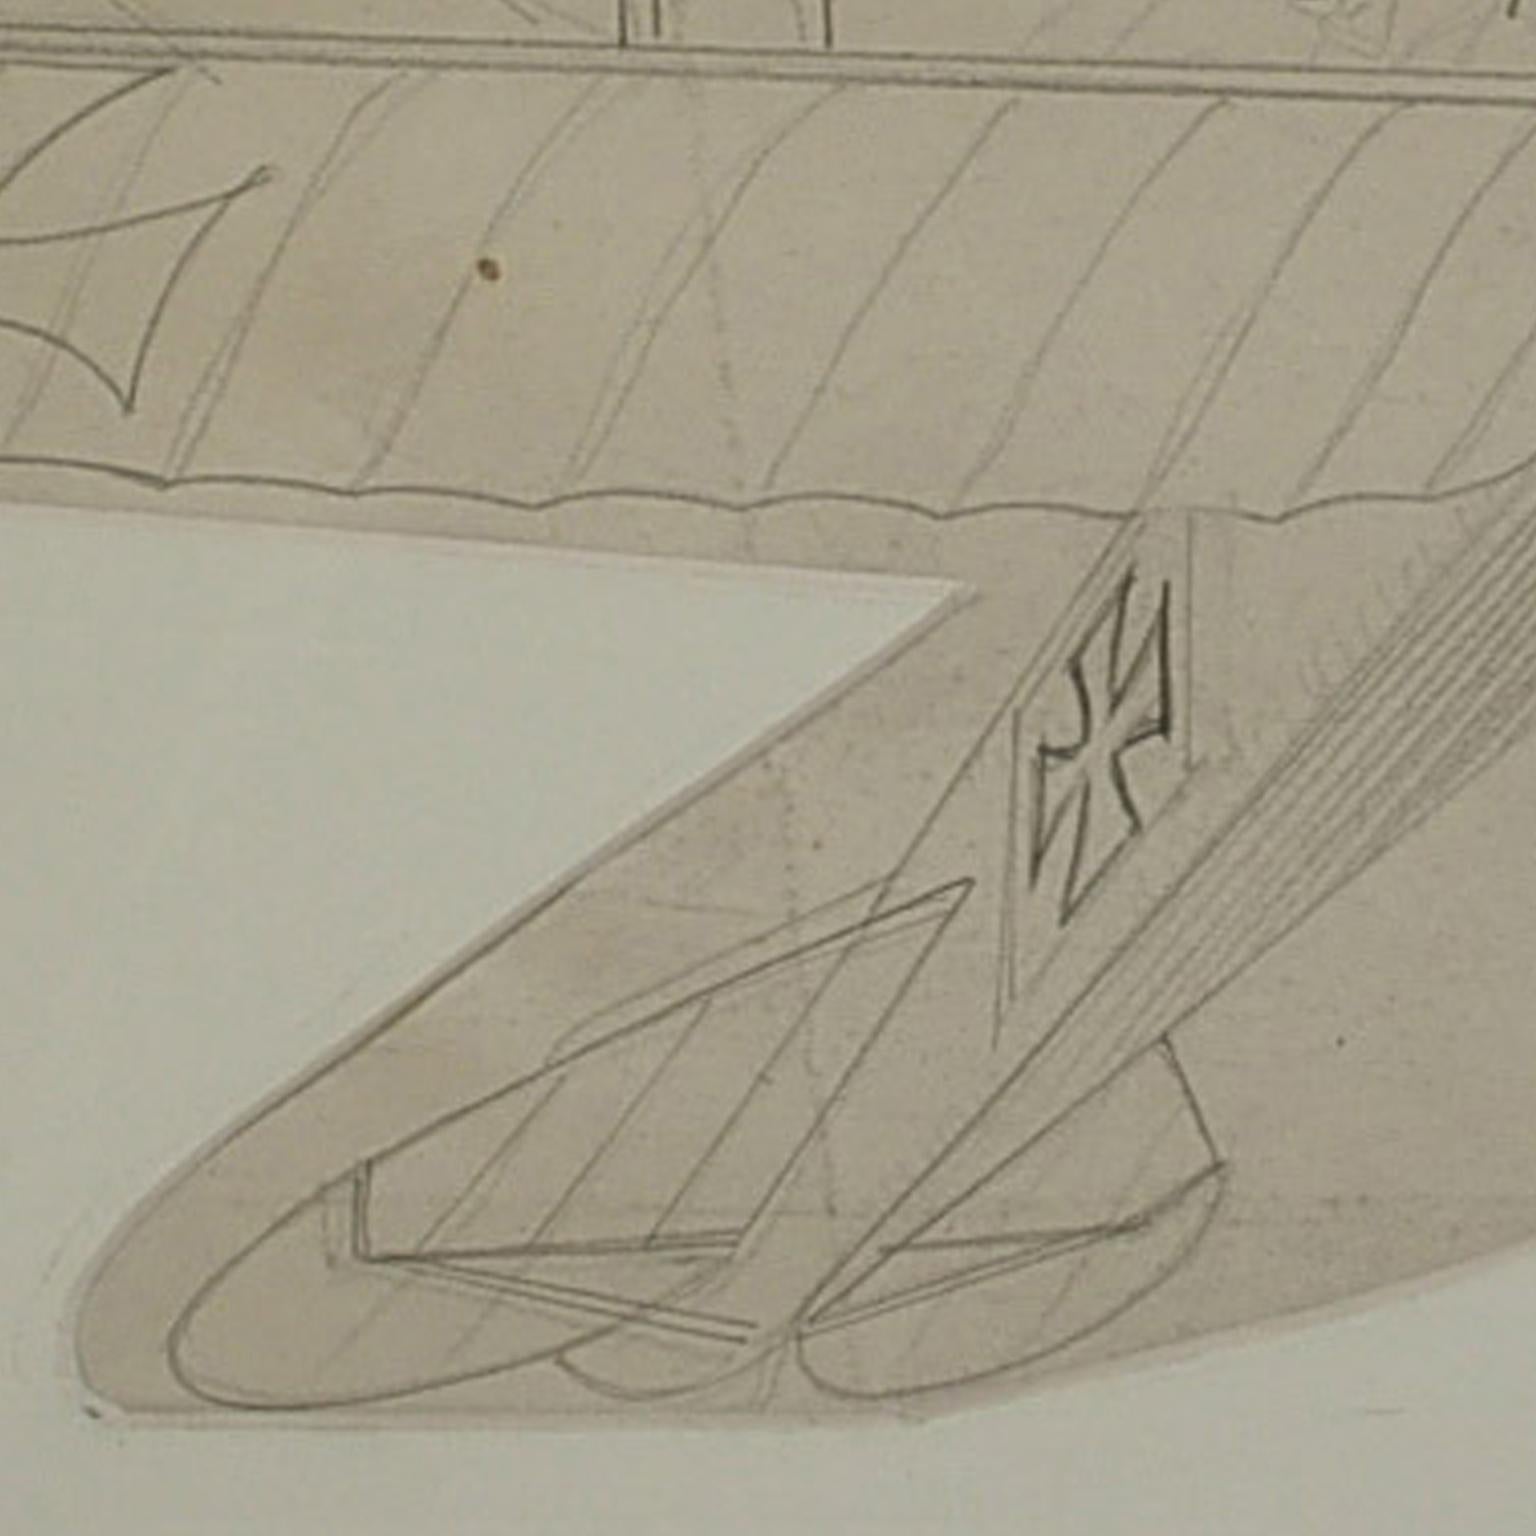 albatros zeichnung